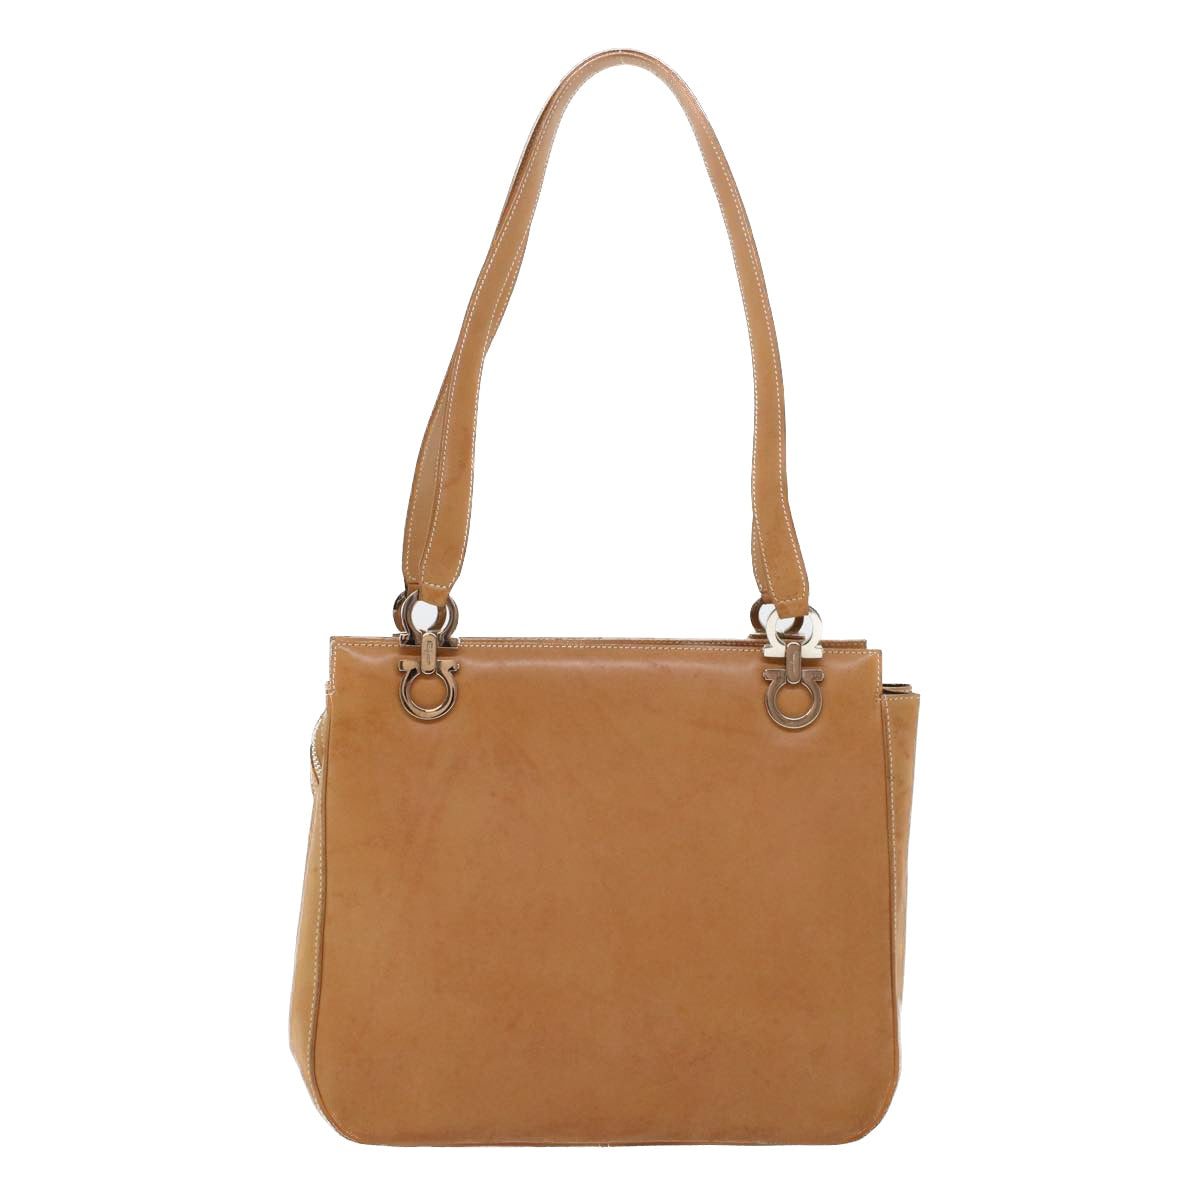 Salvatore Ferragamo Hand Bag Leather Beige Auth 42757 - 0